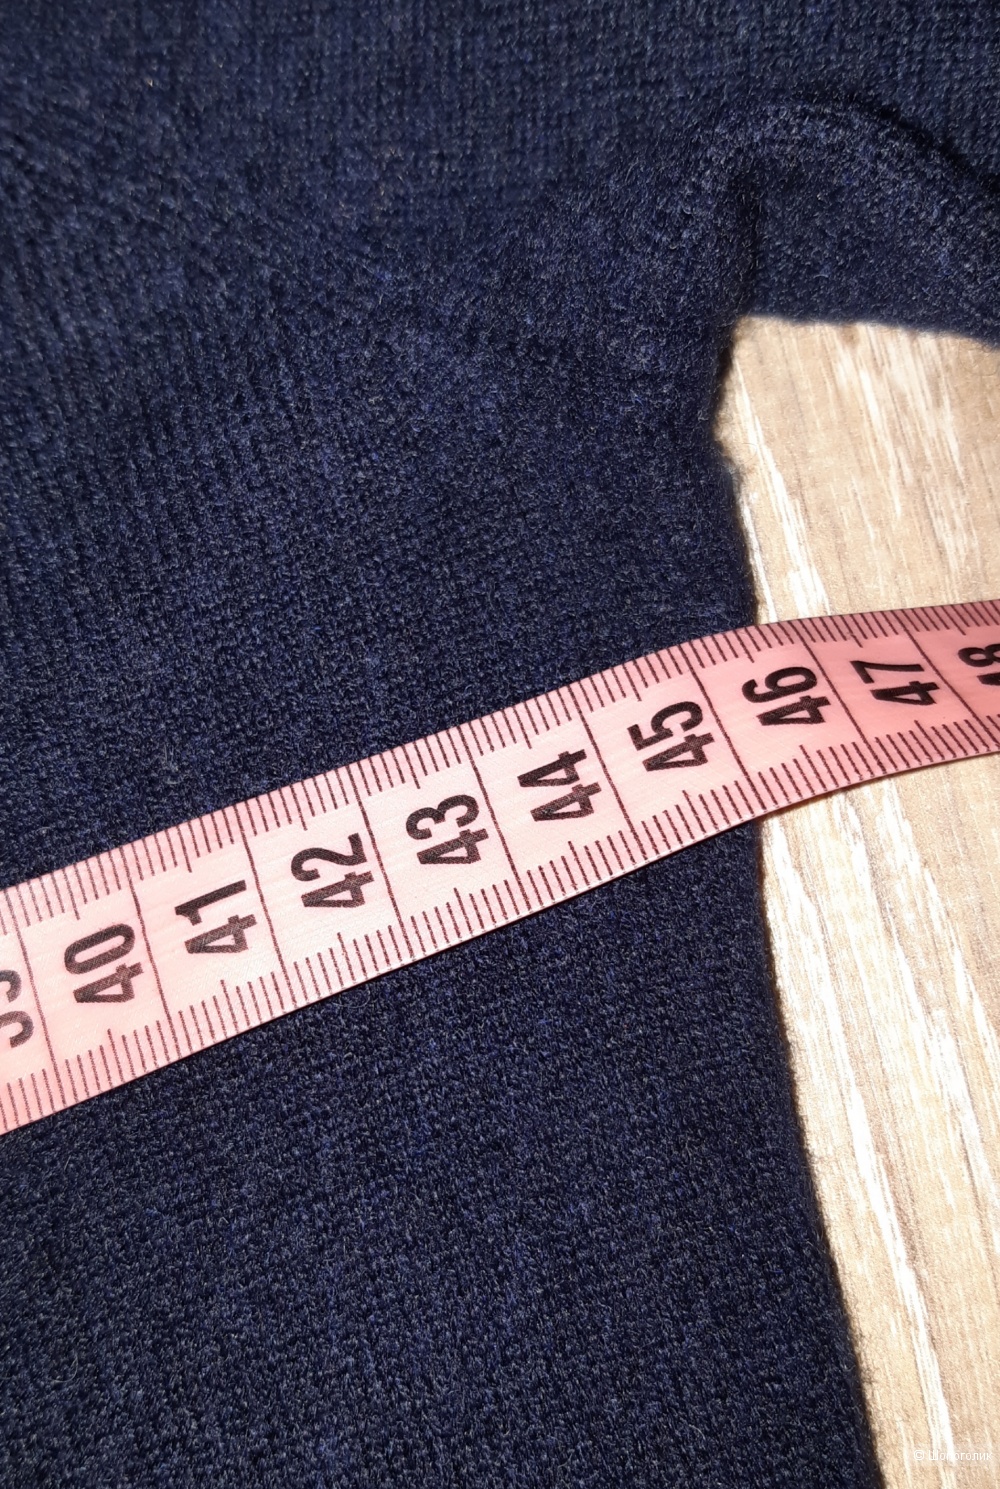 Кашемировый пуловер hm, размер s/m